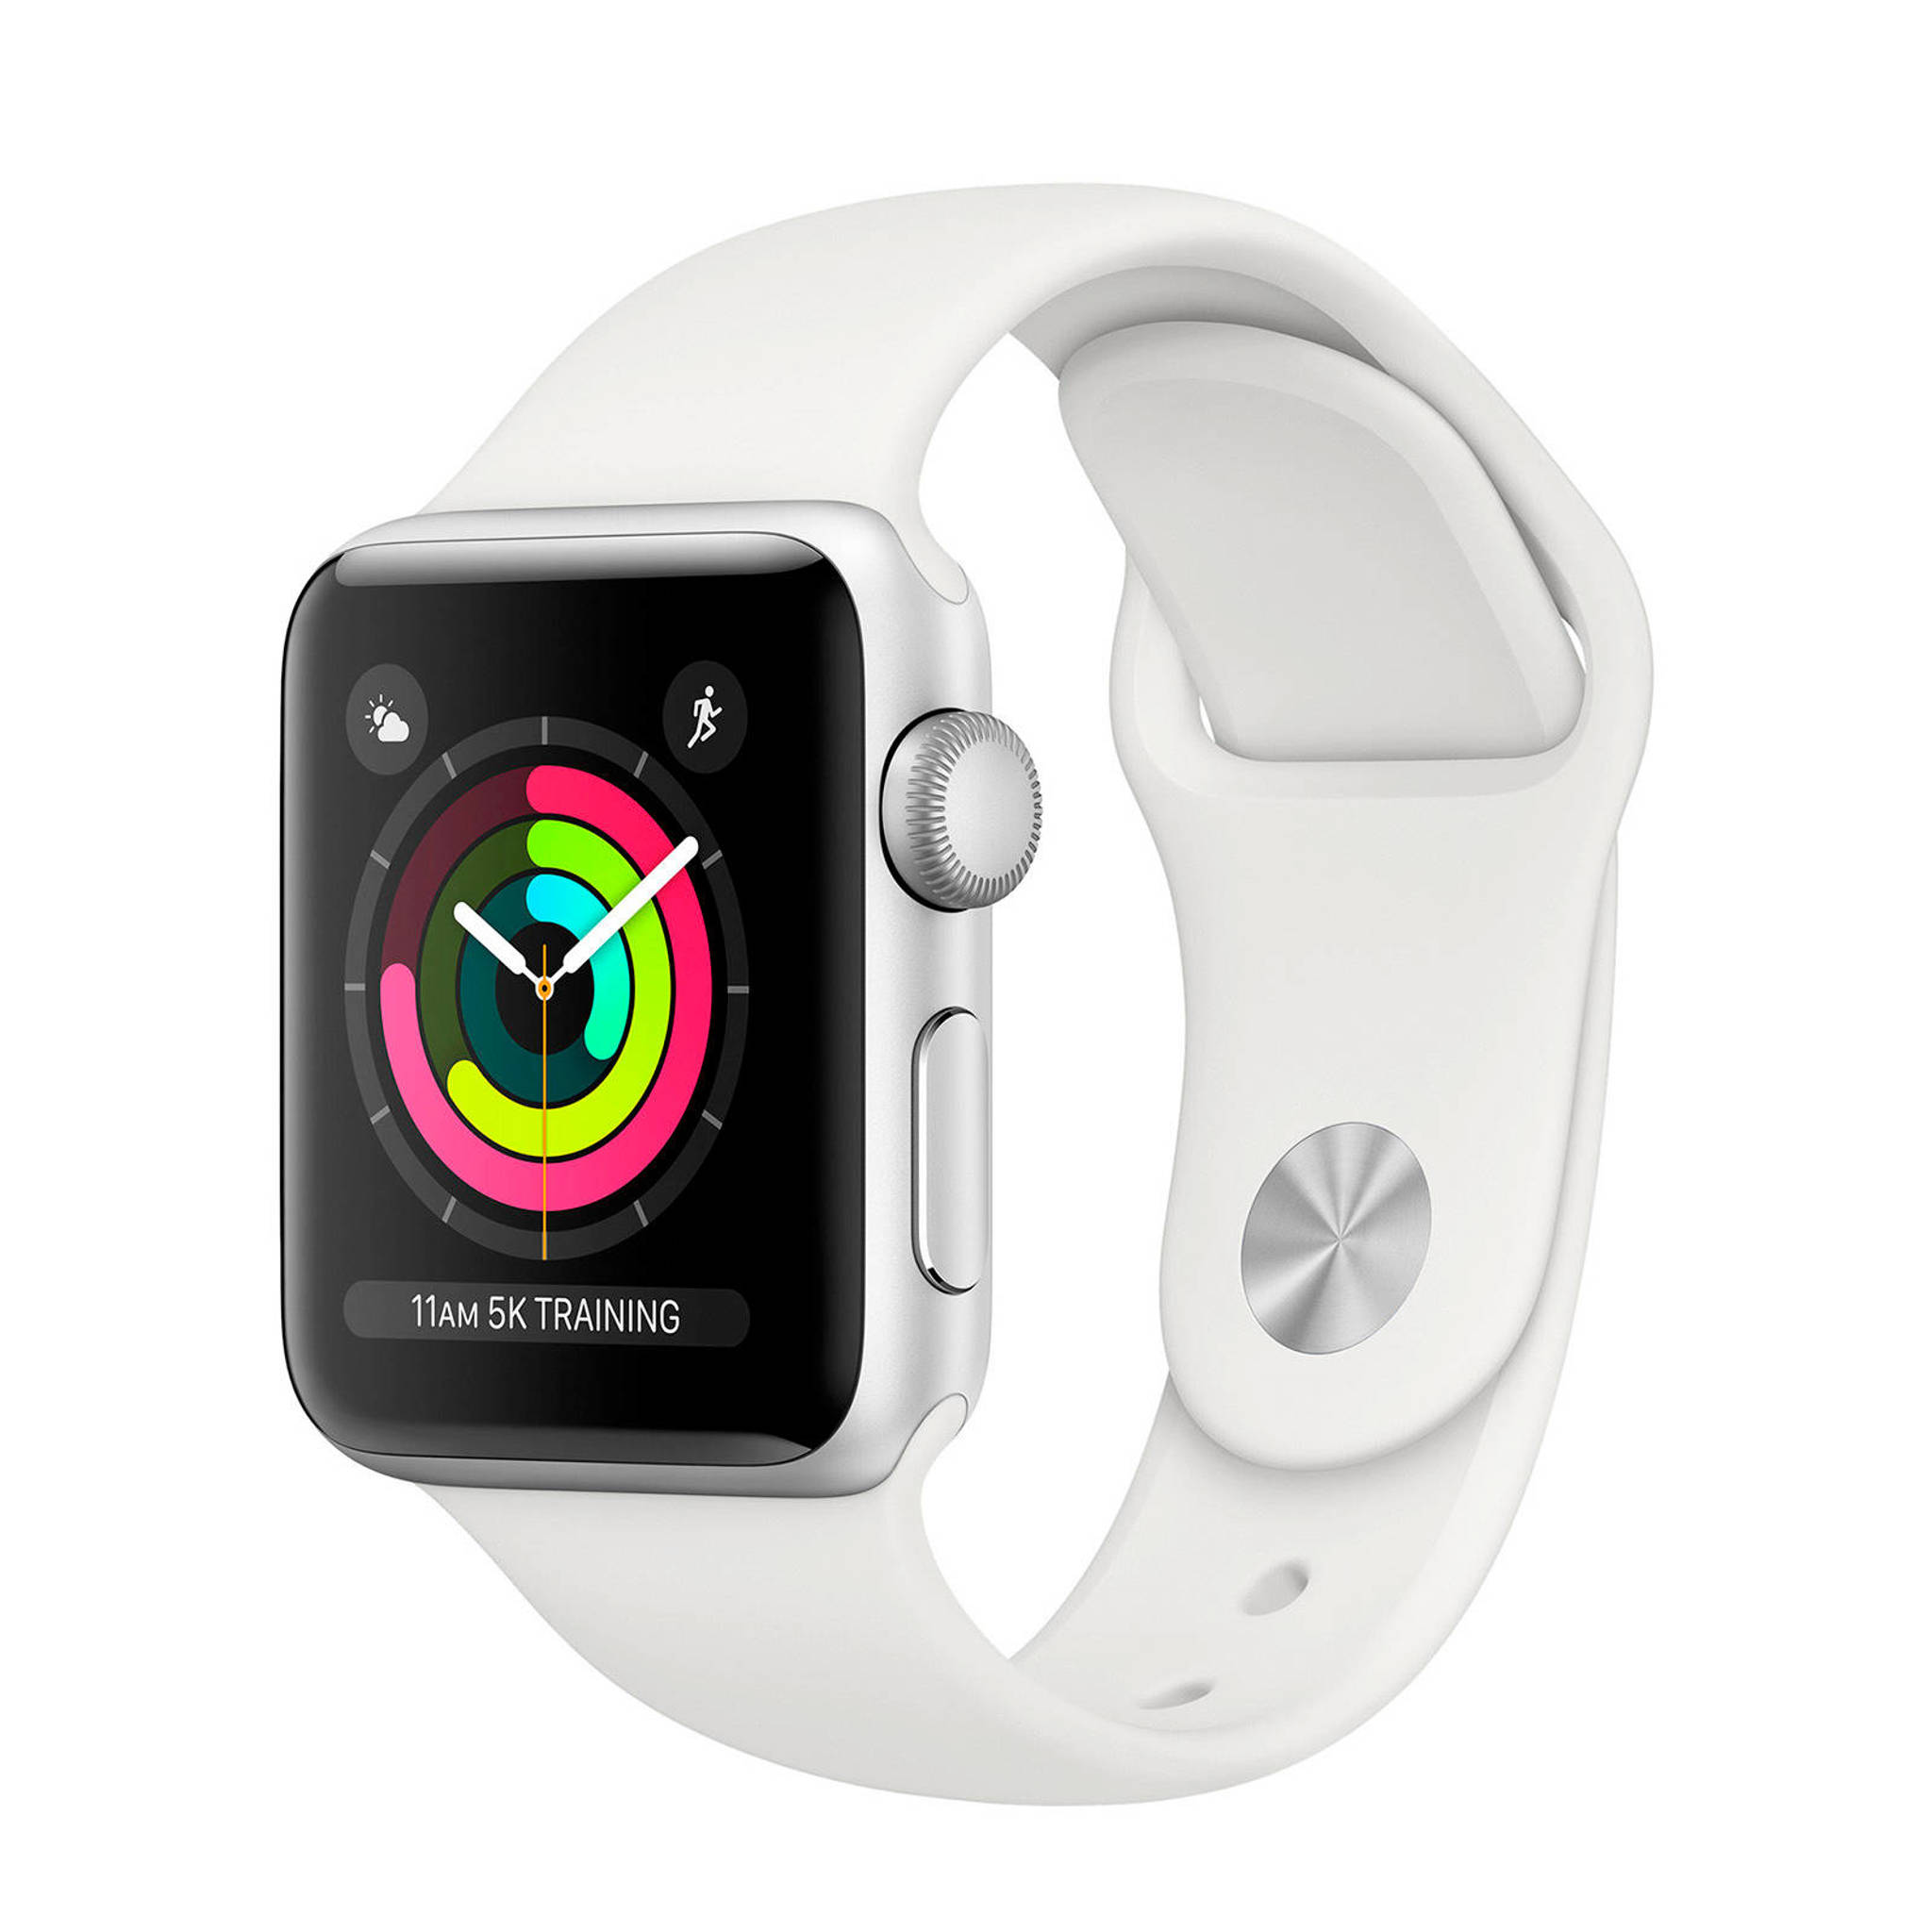 hoofdstad Diplomatieke kwesties Tenen Apple Watch 3 38mm Smartwatch | wehkamp